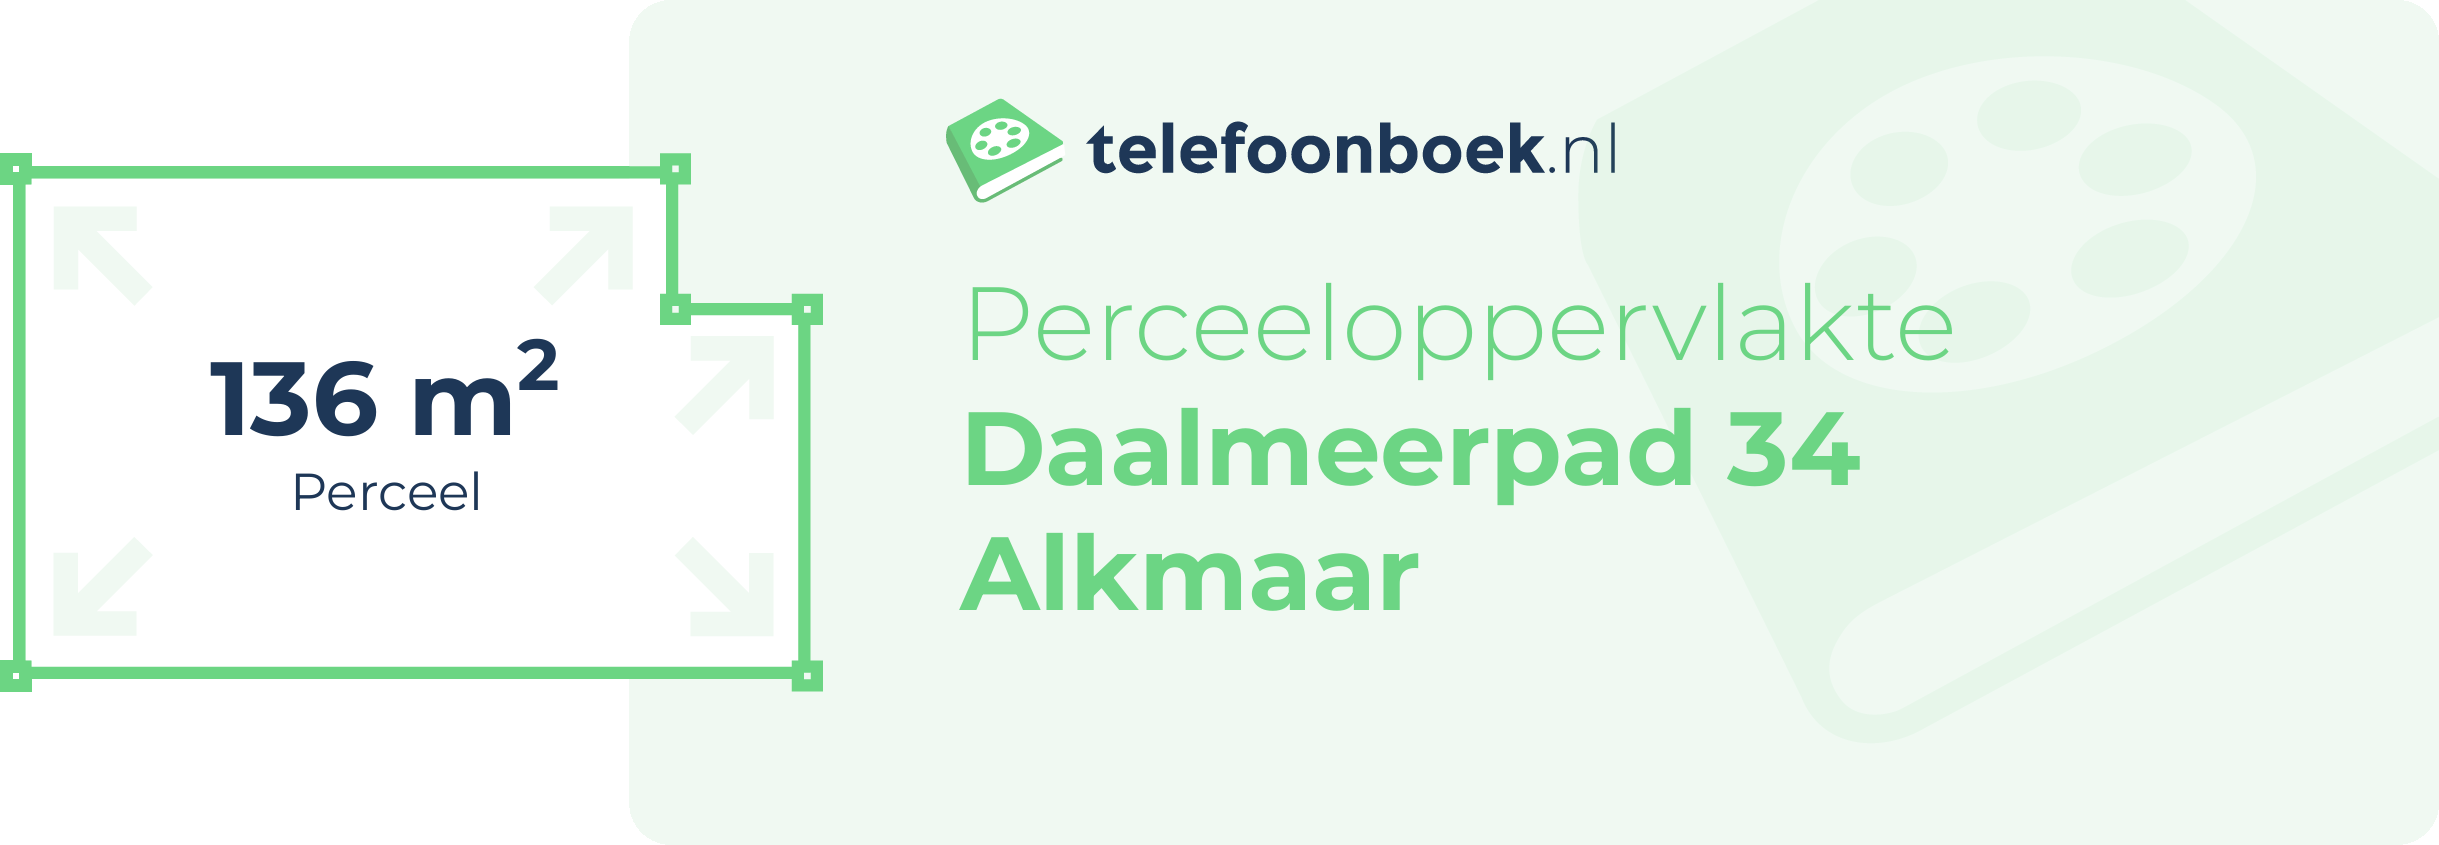 Perceeloppervlakte Daalmeerpad 34 Alkmaar